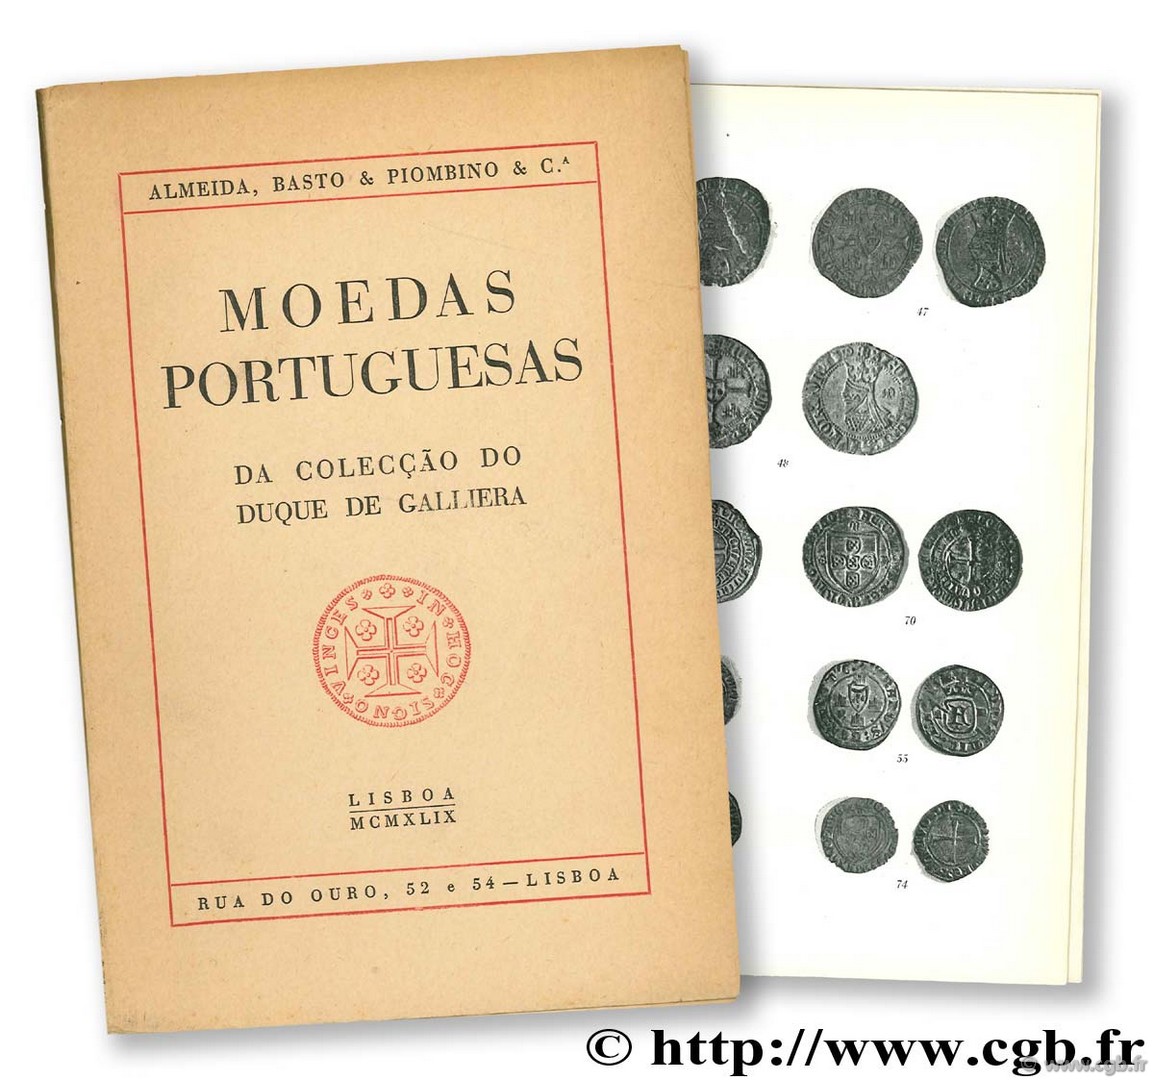 Moedas Portuguesas da Colecção do Duque de Galliera 